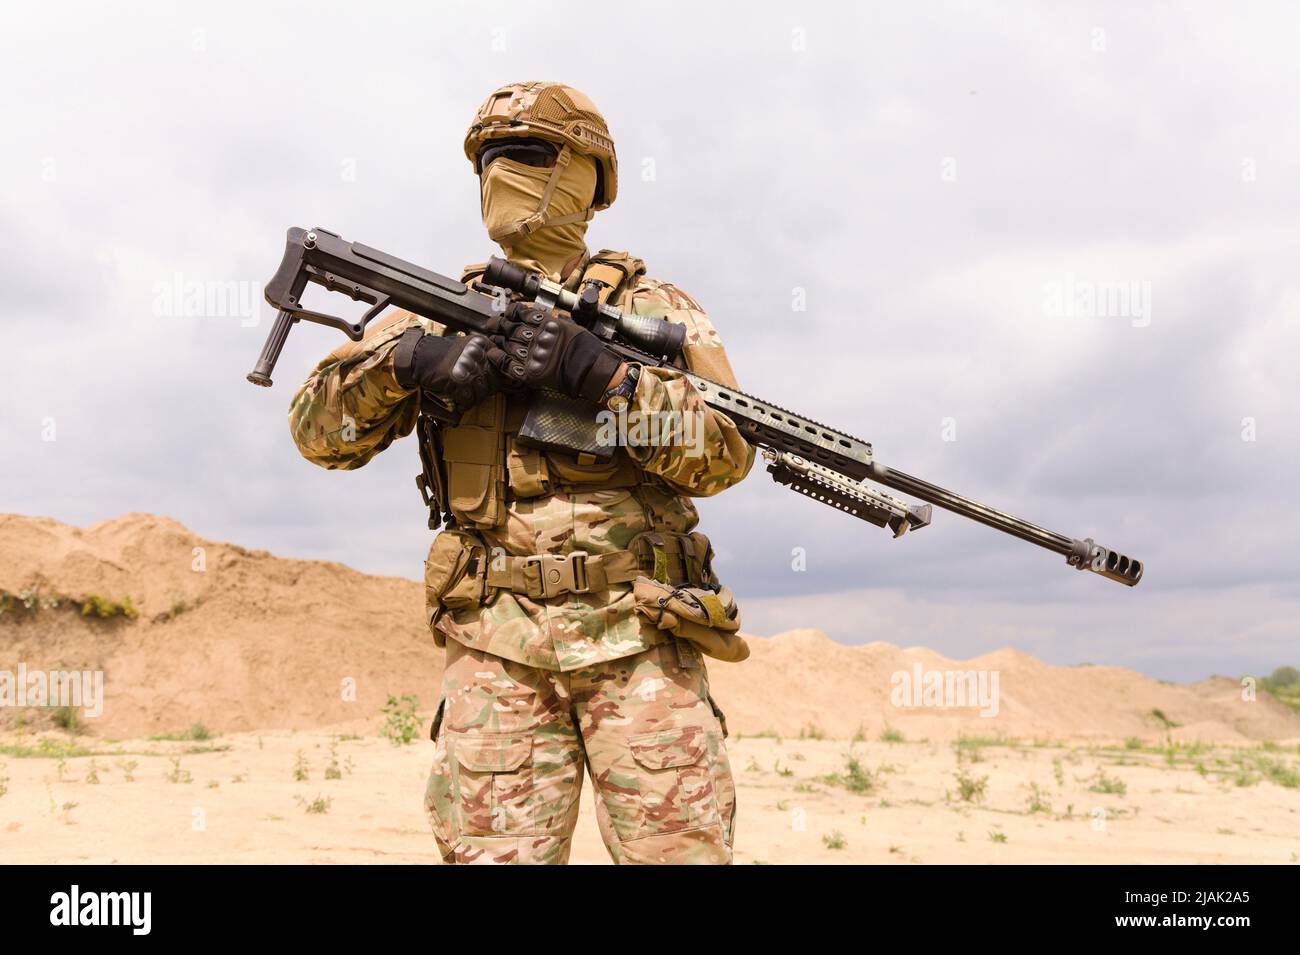 Soldat in Tarnung hält Scharfschützengewehr, während er in der Wüste steht. Stockfoto